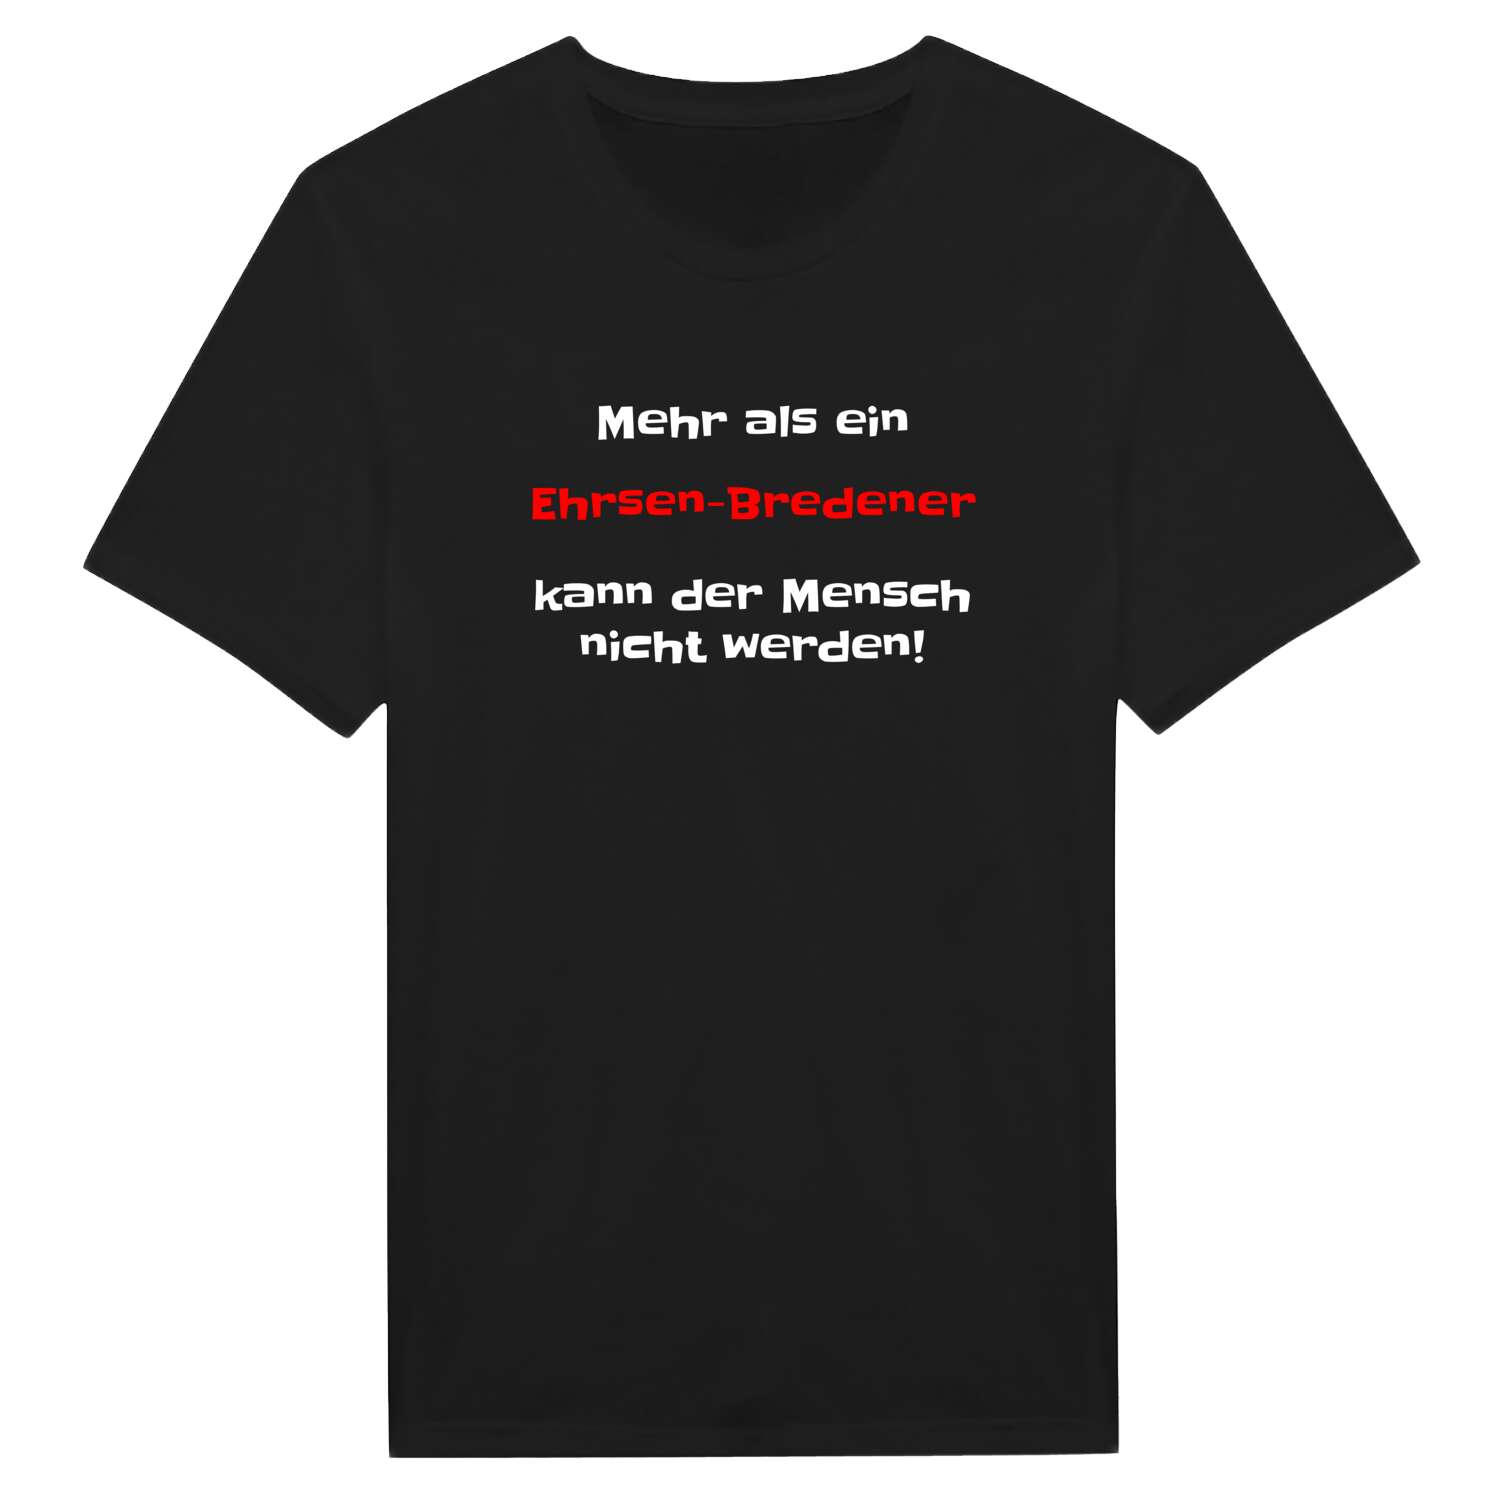 Ehrsen-Breden T-Shirt »Mehr als ein«